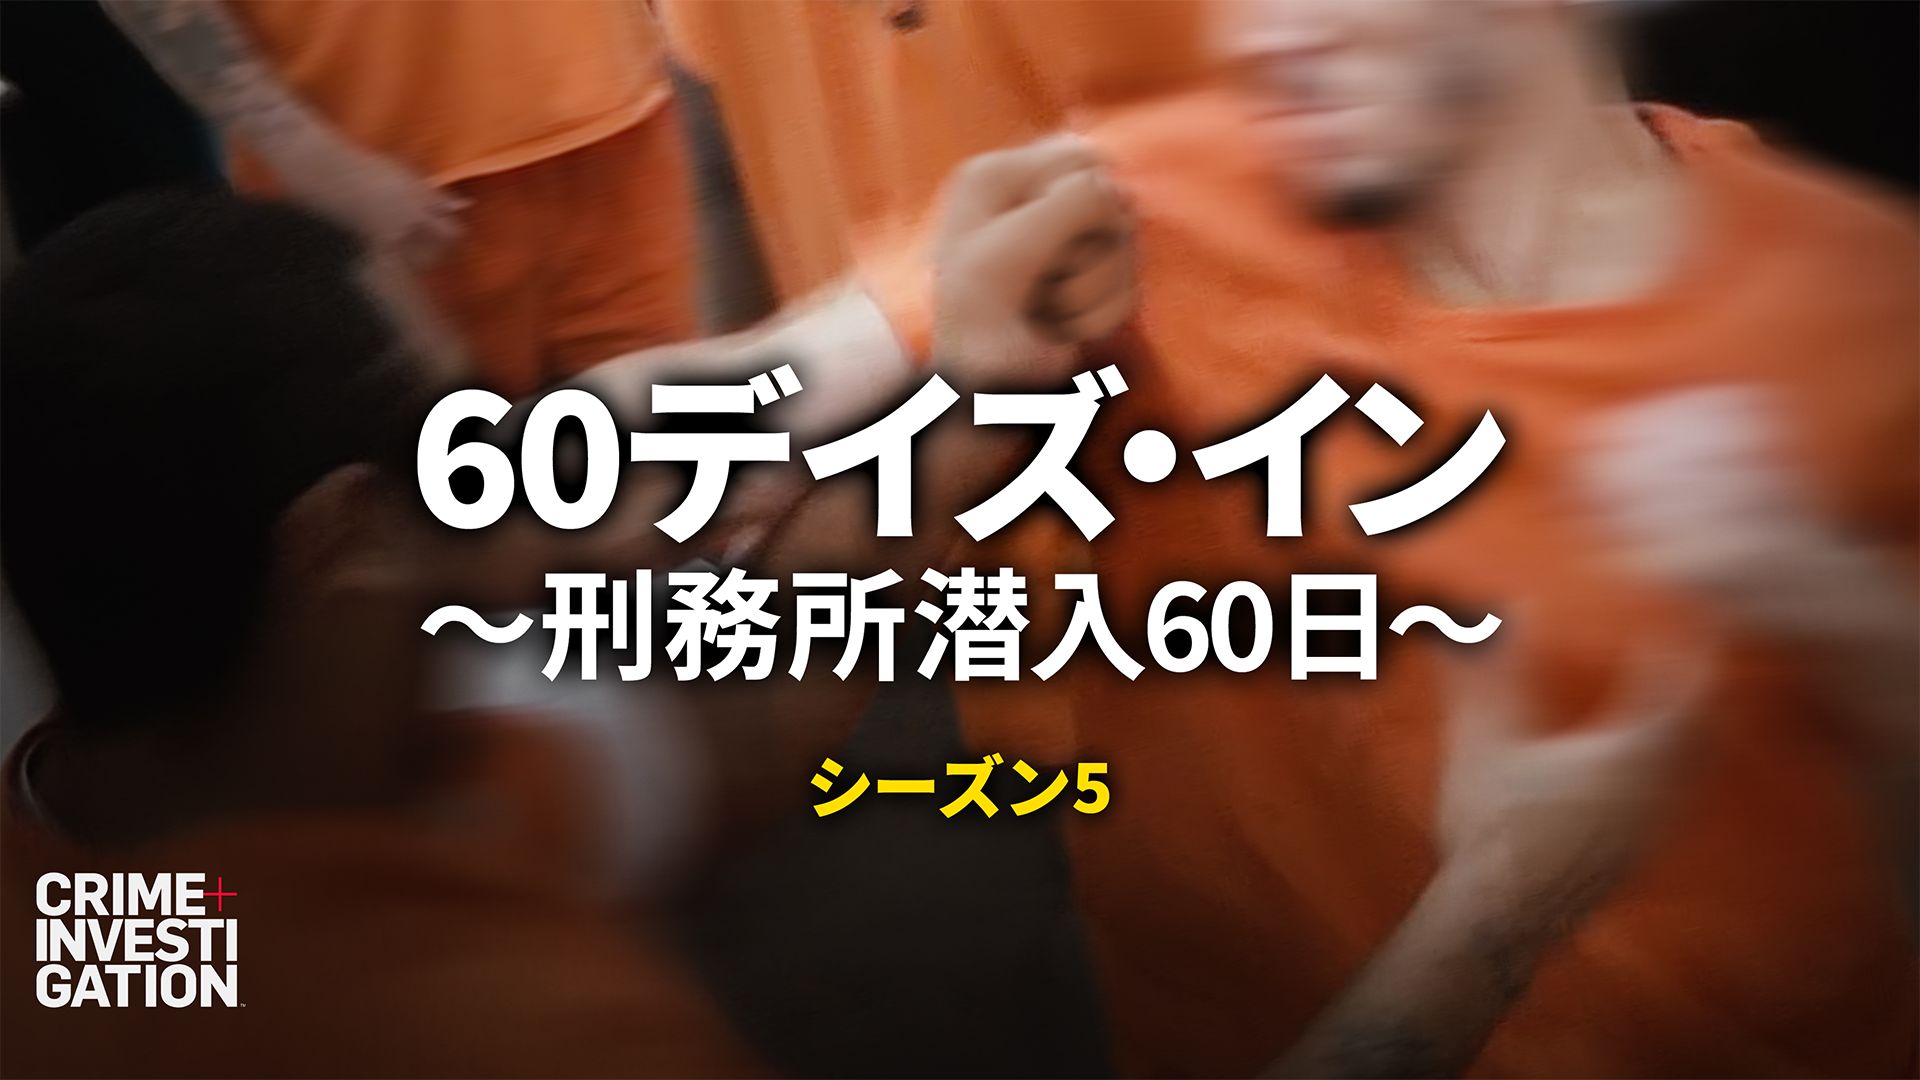 60デイズ･イン 〜刑務所潜入60日〜 シーズン5